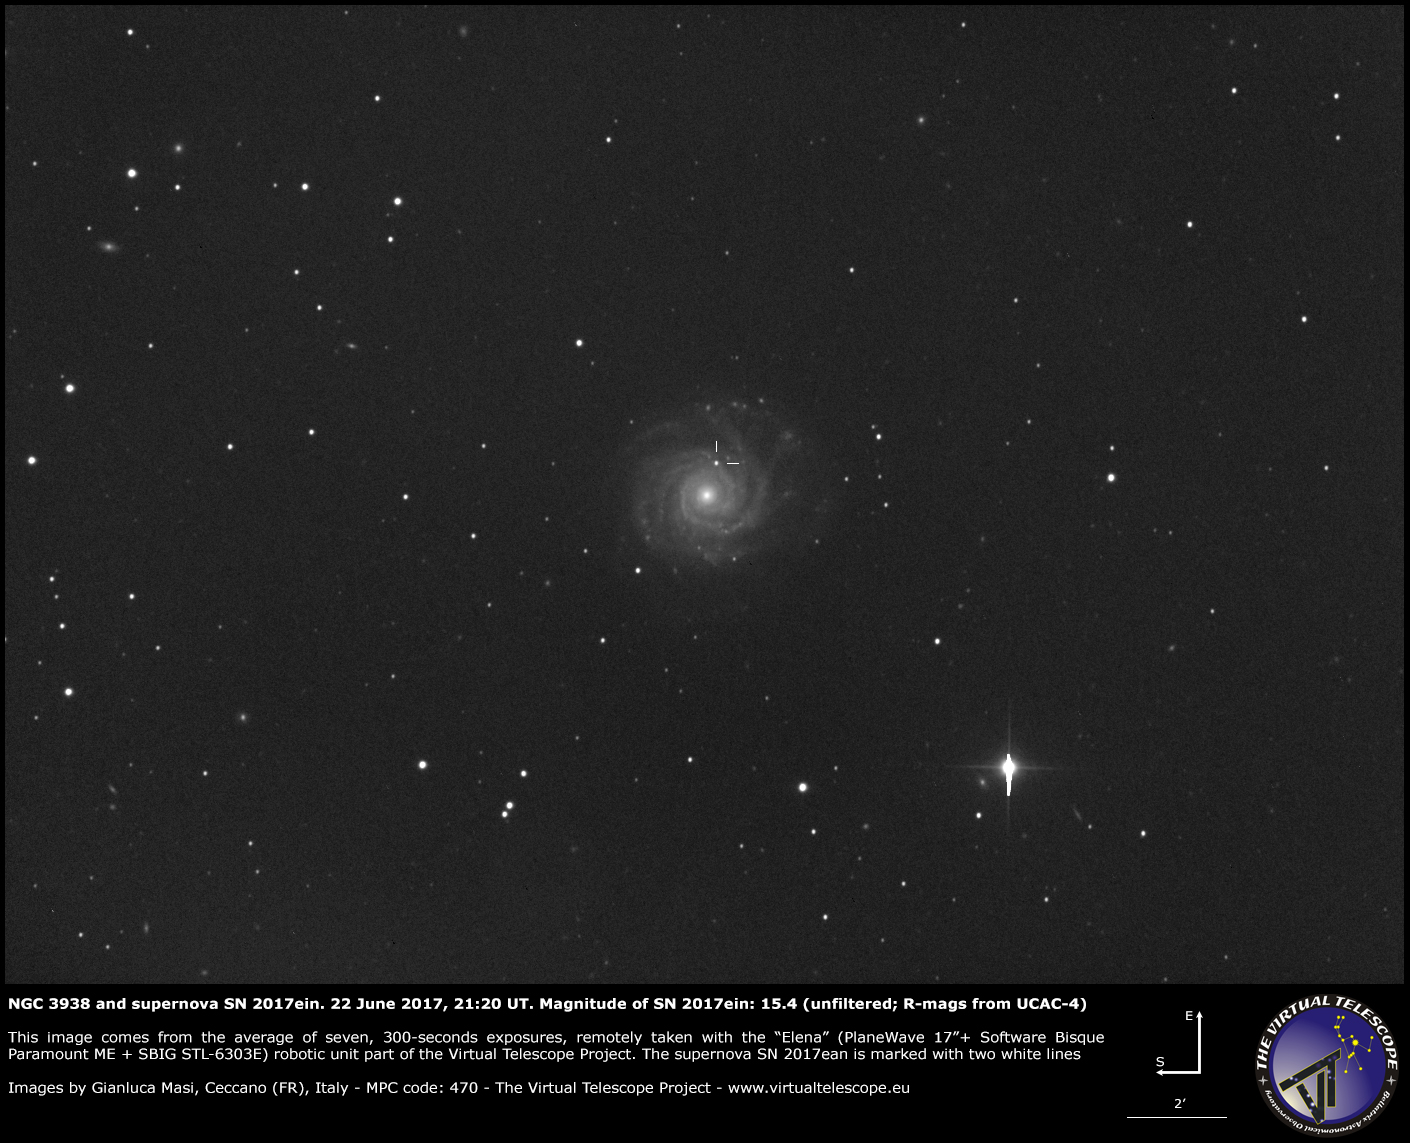 Al momento stai visualizzando NGC 3938 e la supernova SN 2017ein: una nuova immagine (22 giugno 2017)